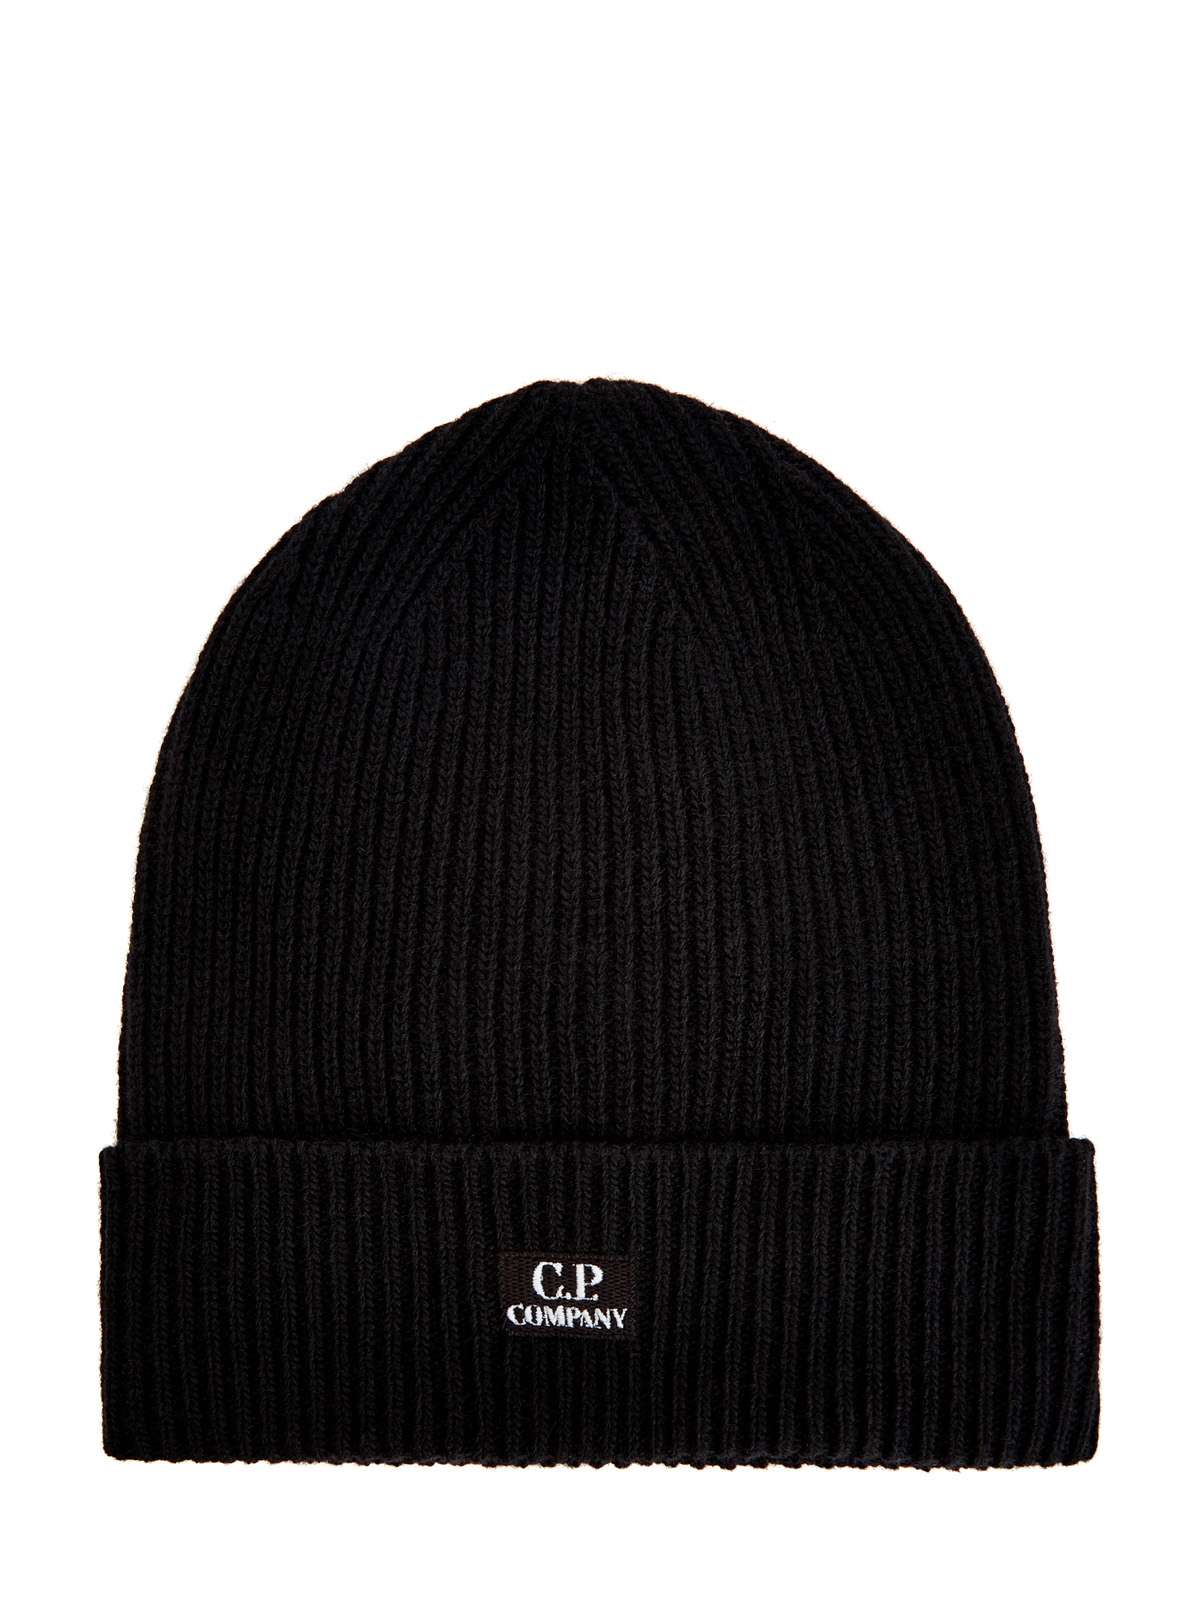 Теплая шапка из мериносовой шерсти с логотипом C.P.COMPANY, цвет черный, размер 50;52;54;56;46